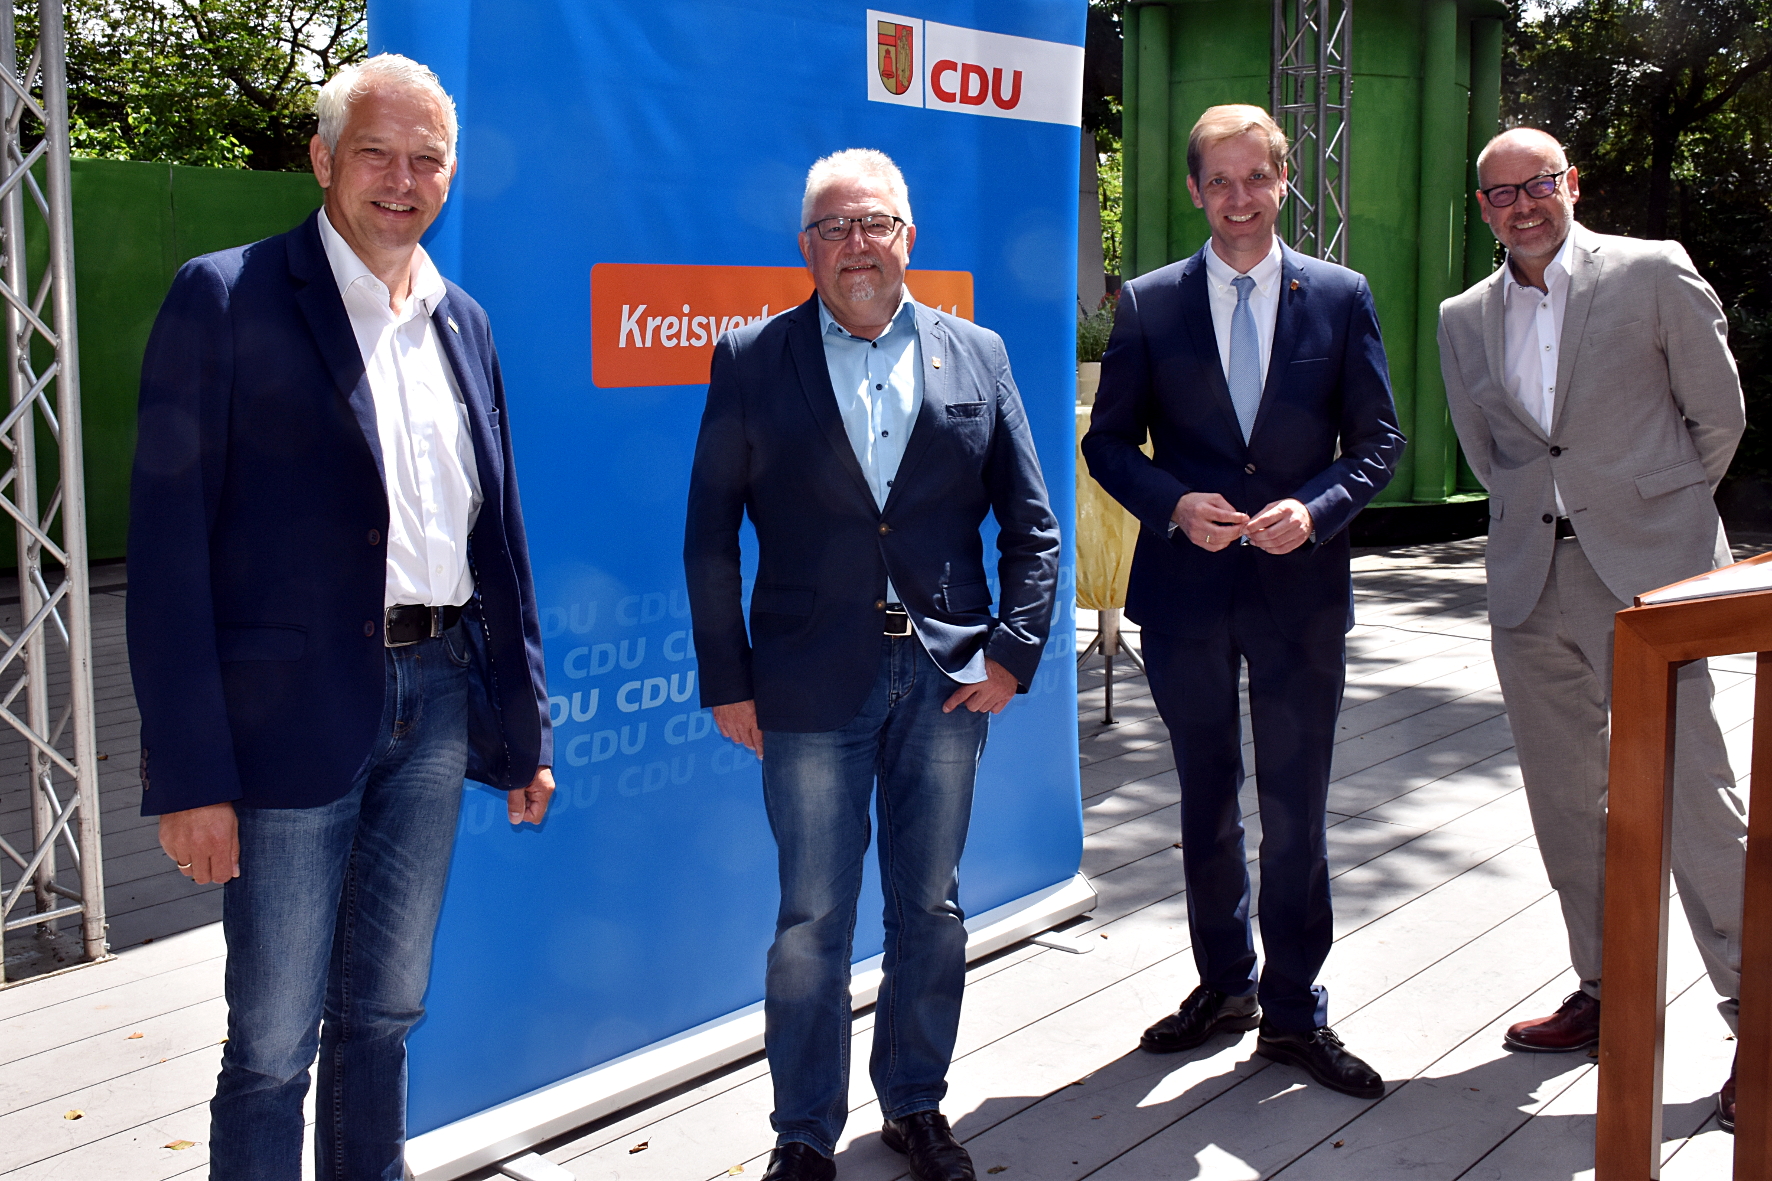 Bürgermeister Wilhelm Sendermann, Franz Pohlmann, Landrat Dr. Christian Schulze Pellengahr, Ralf Danielczyk